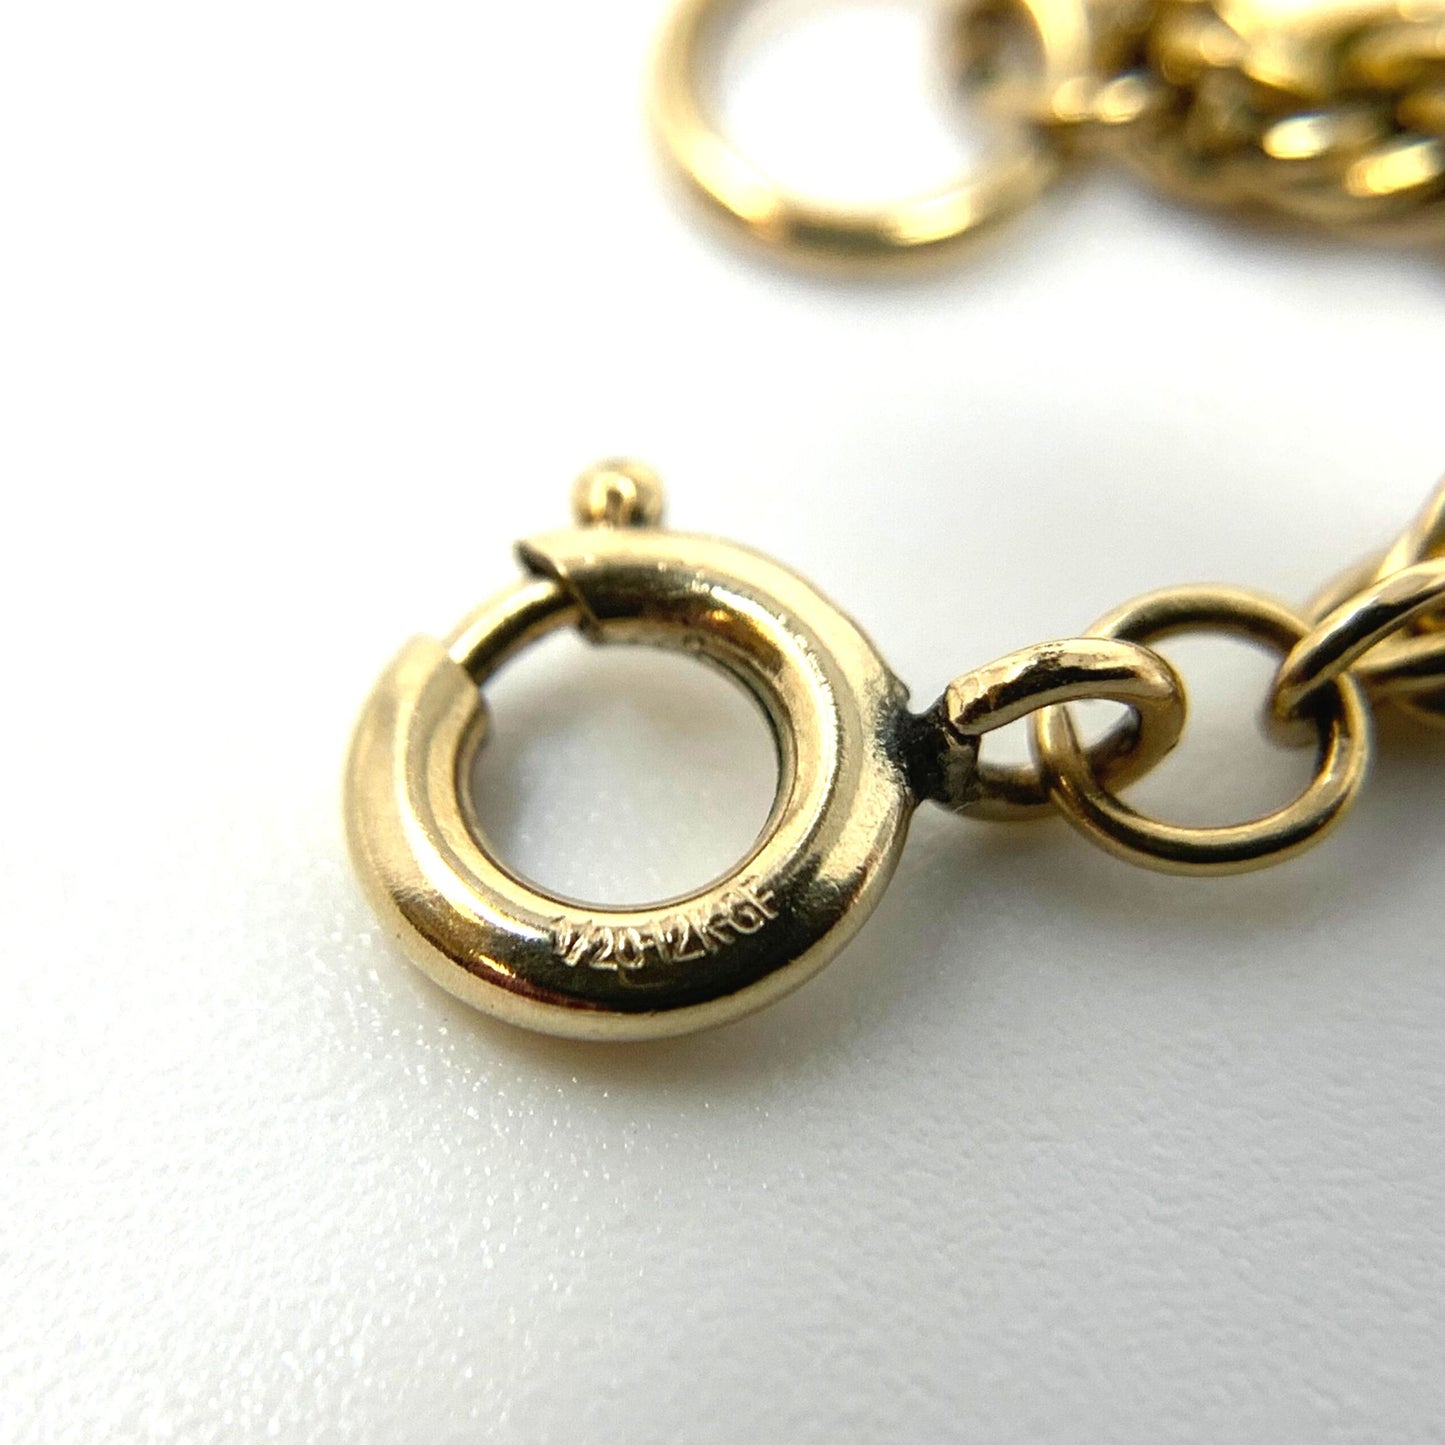 Vintage 30” 12K Gold Filled 3mm Rope Necklace